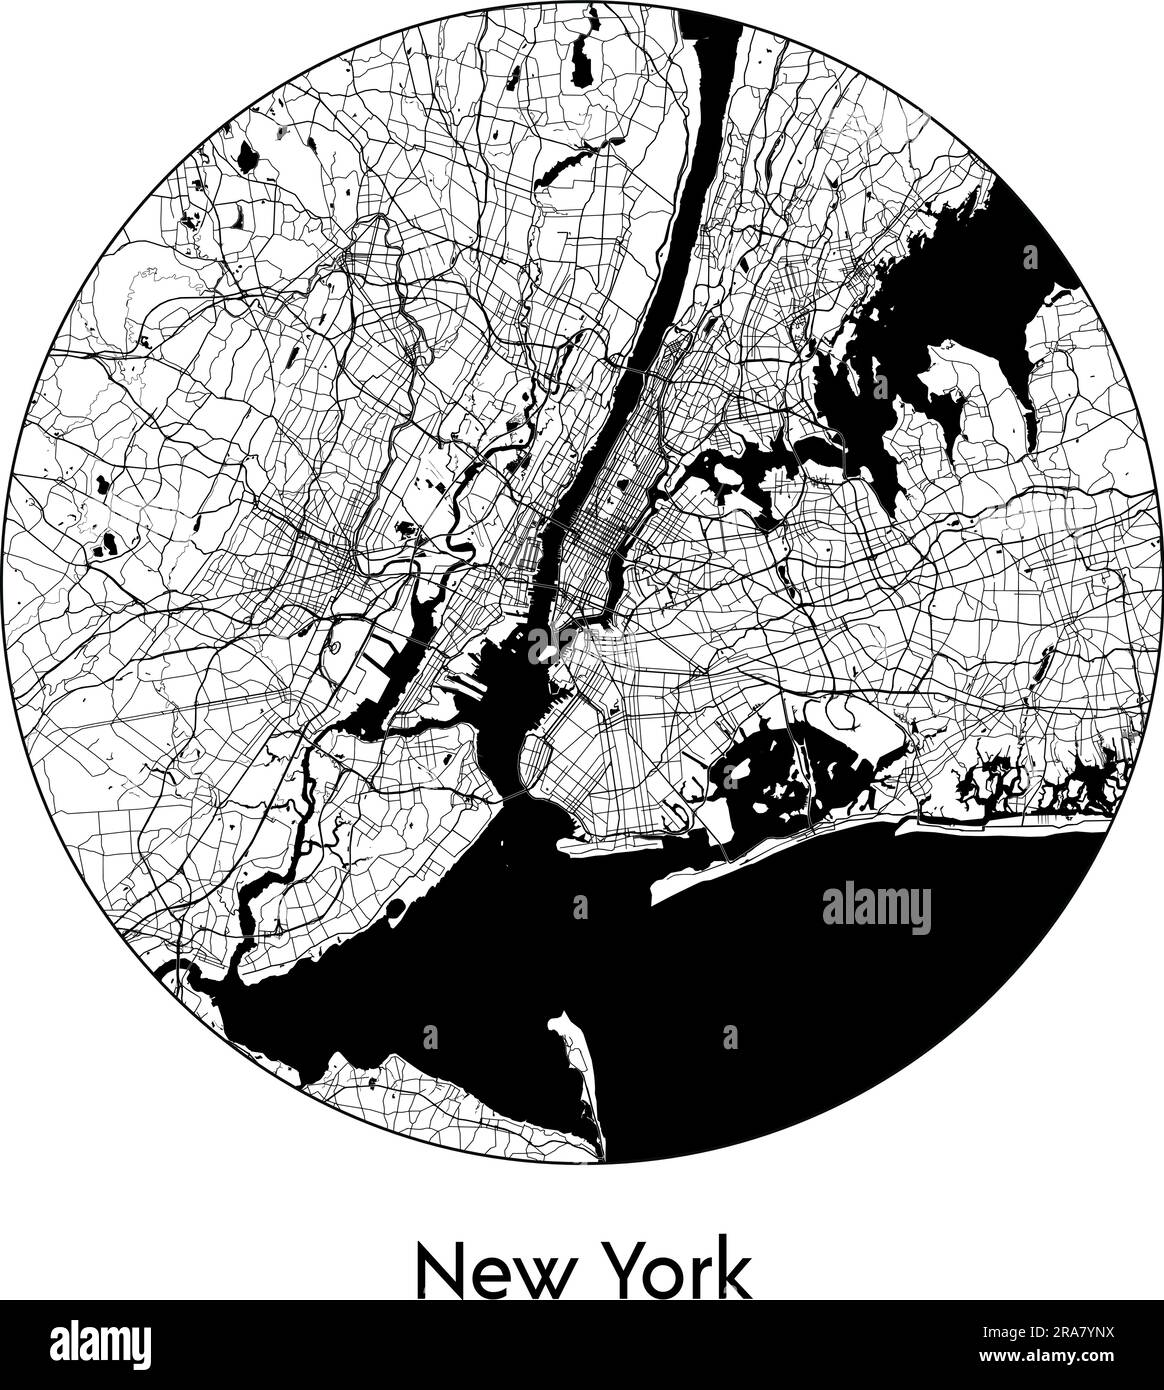 Carte de la ville New York Etats-Unis Amérique du Nord illustration vectorielle noir blanc Illustration de Vecteur